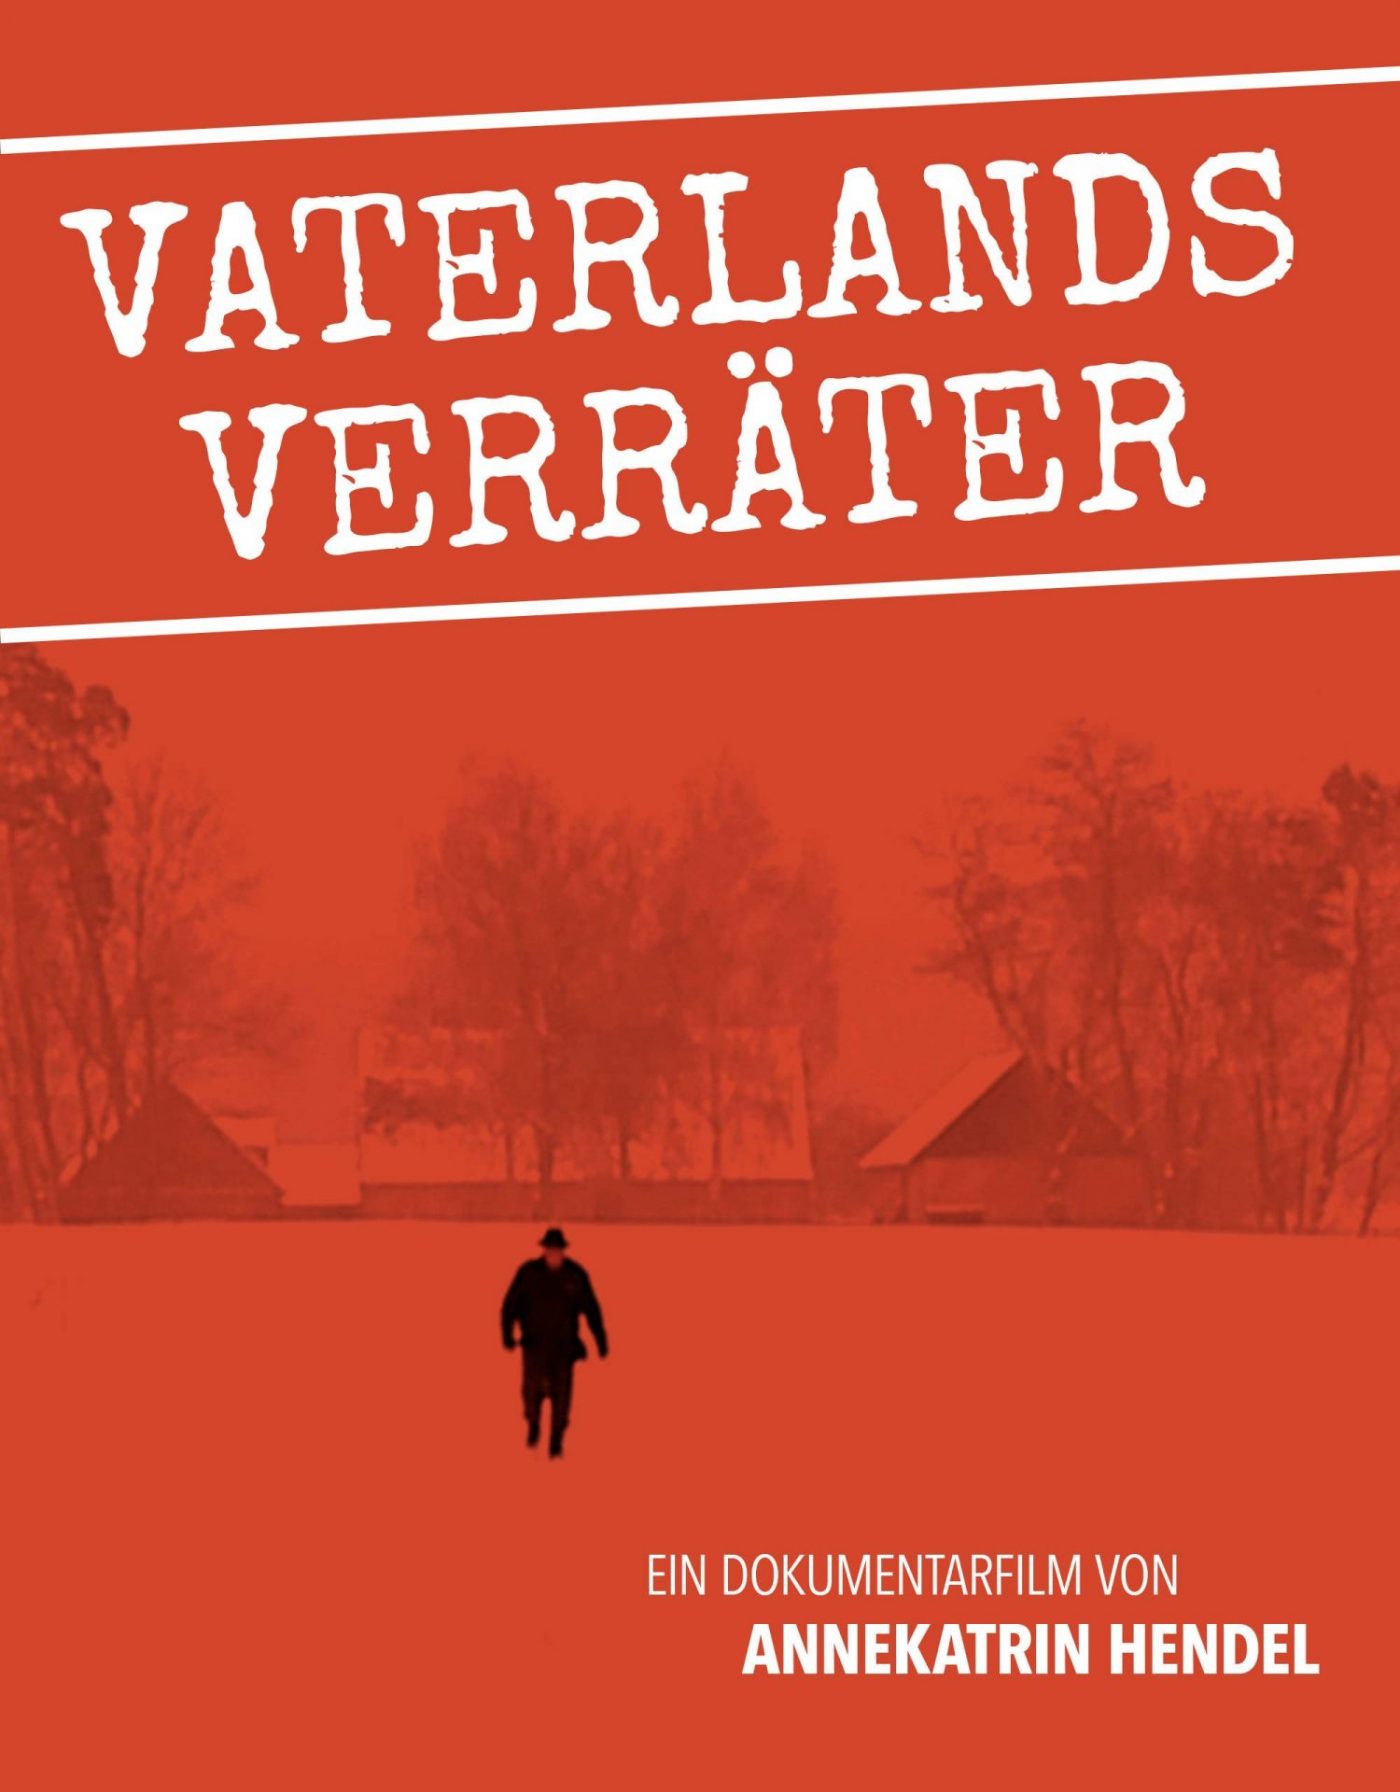 Plakat Vaterlandsverräter